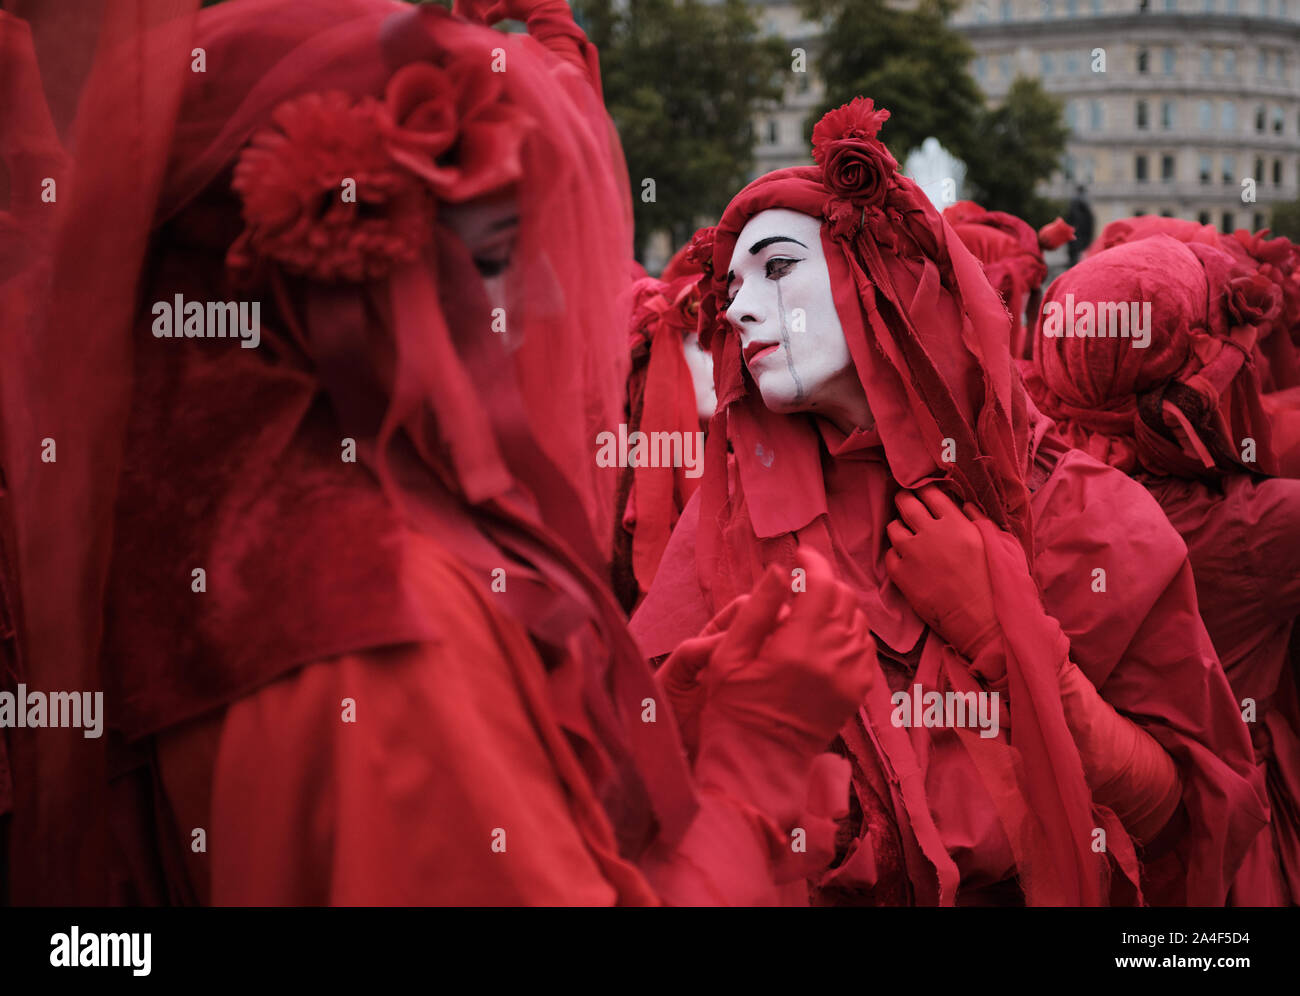 La Brigade rouge pendant la Rébellion Extinction manifestation à Trafalgar Square, Londres. Banque D'Images